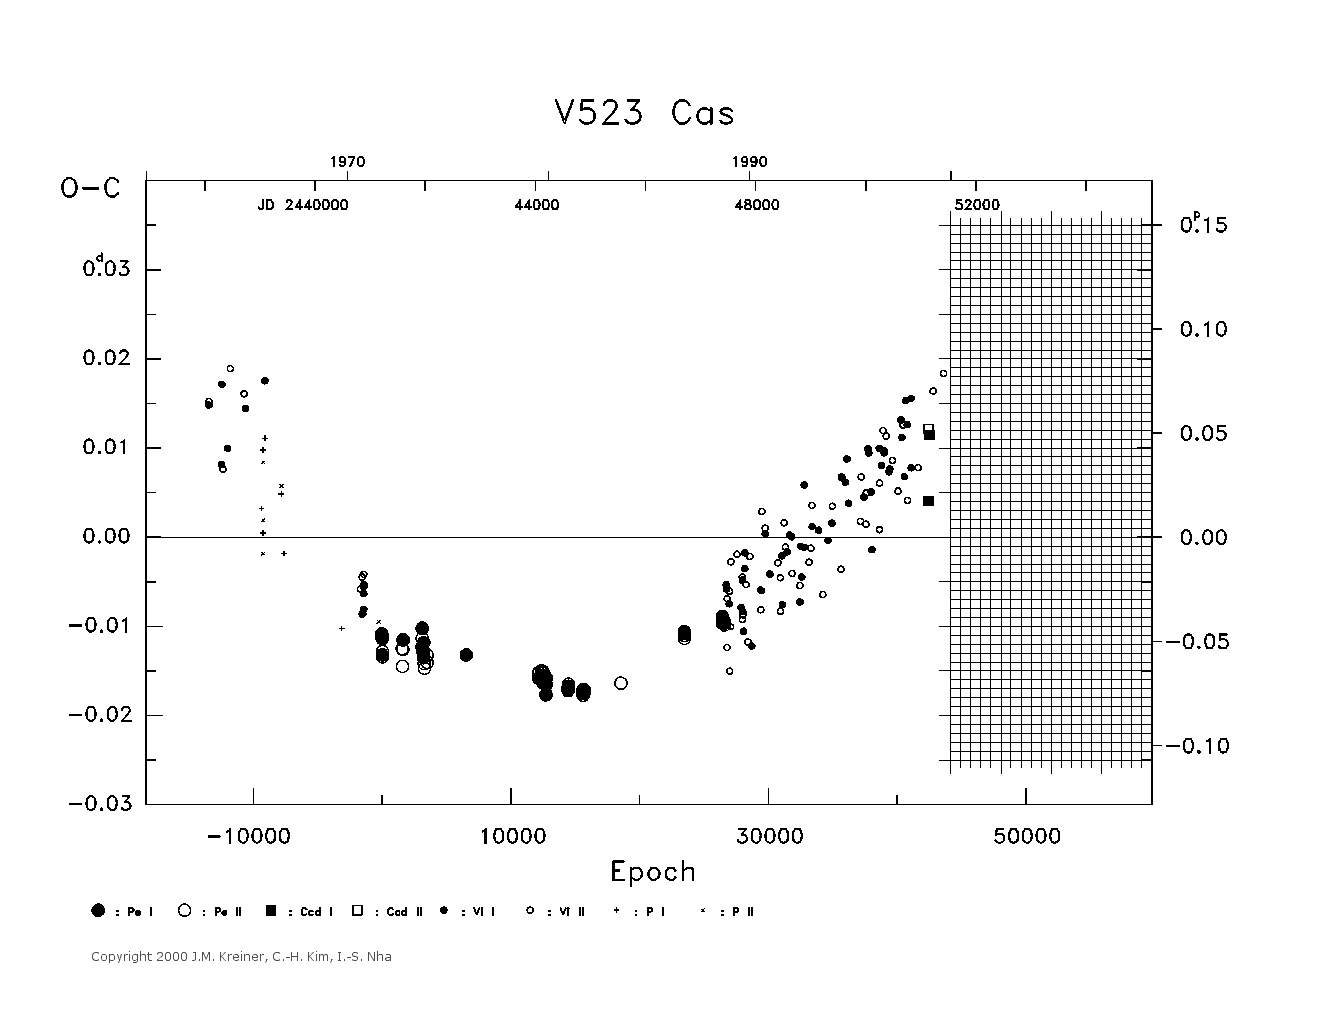 [IMAGE: large V523 CAS O-C diagram]